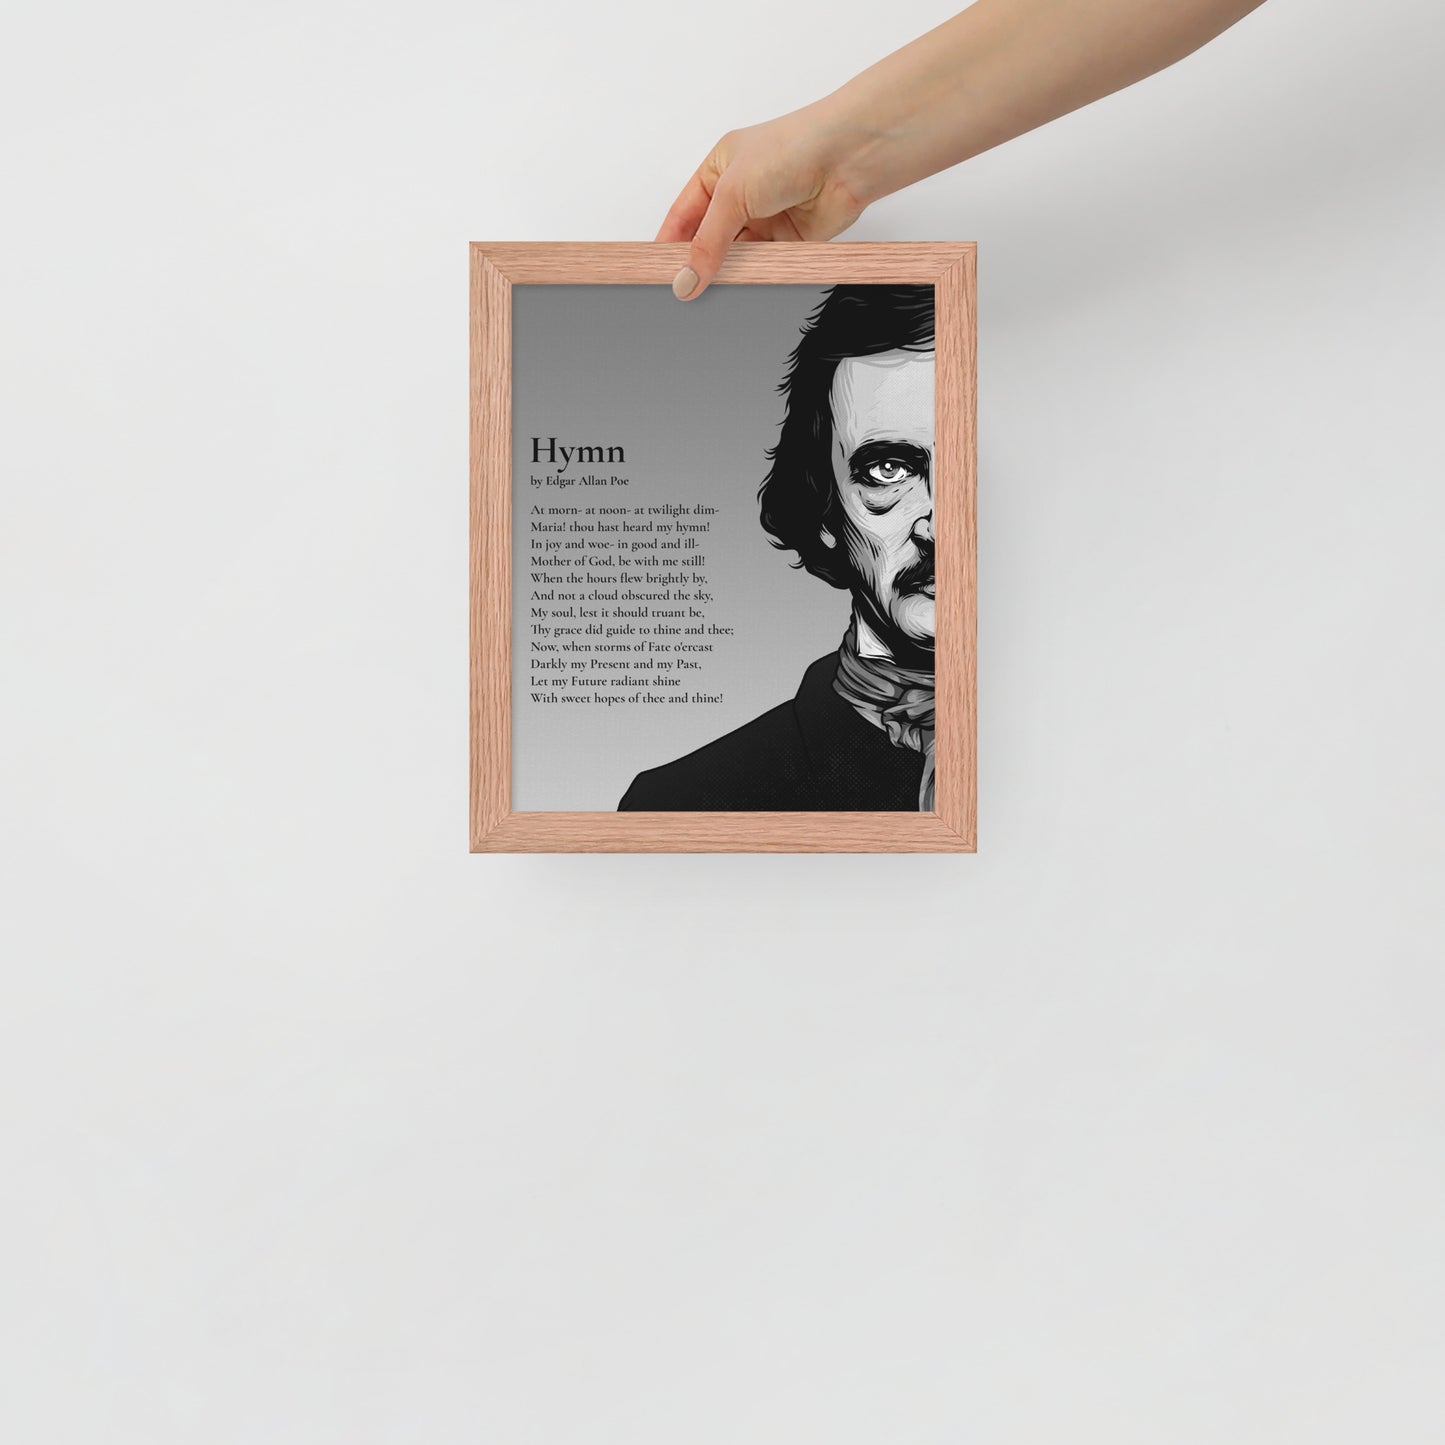 Edgar Allan Poe's 'Hymn' Framed Matted Poster - 8 x 10 Red Oak Frame